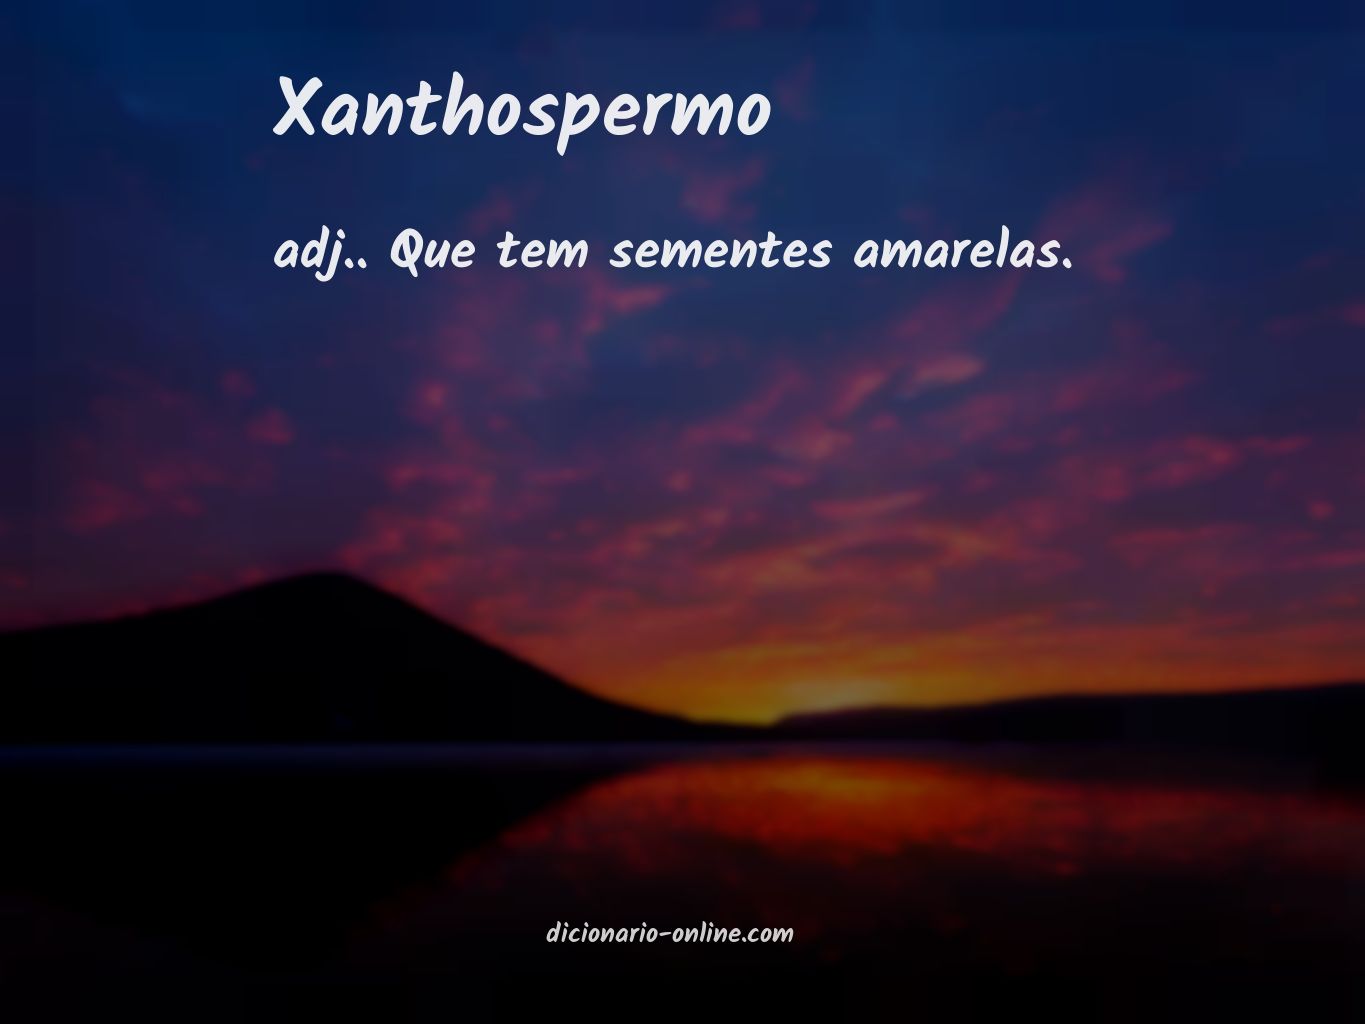 Significado de xanthospermo